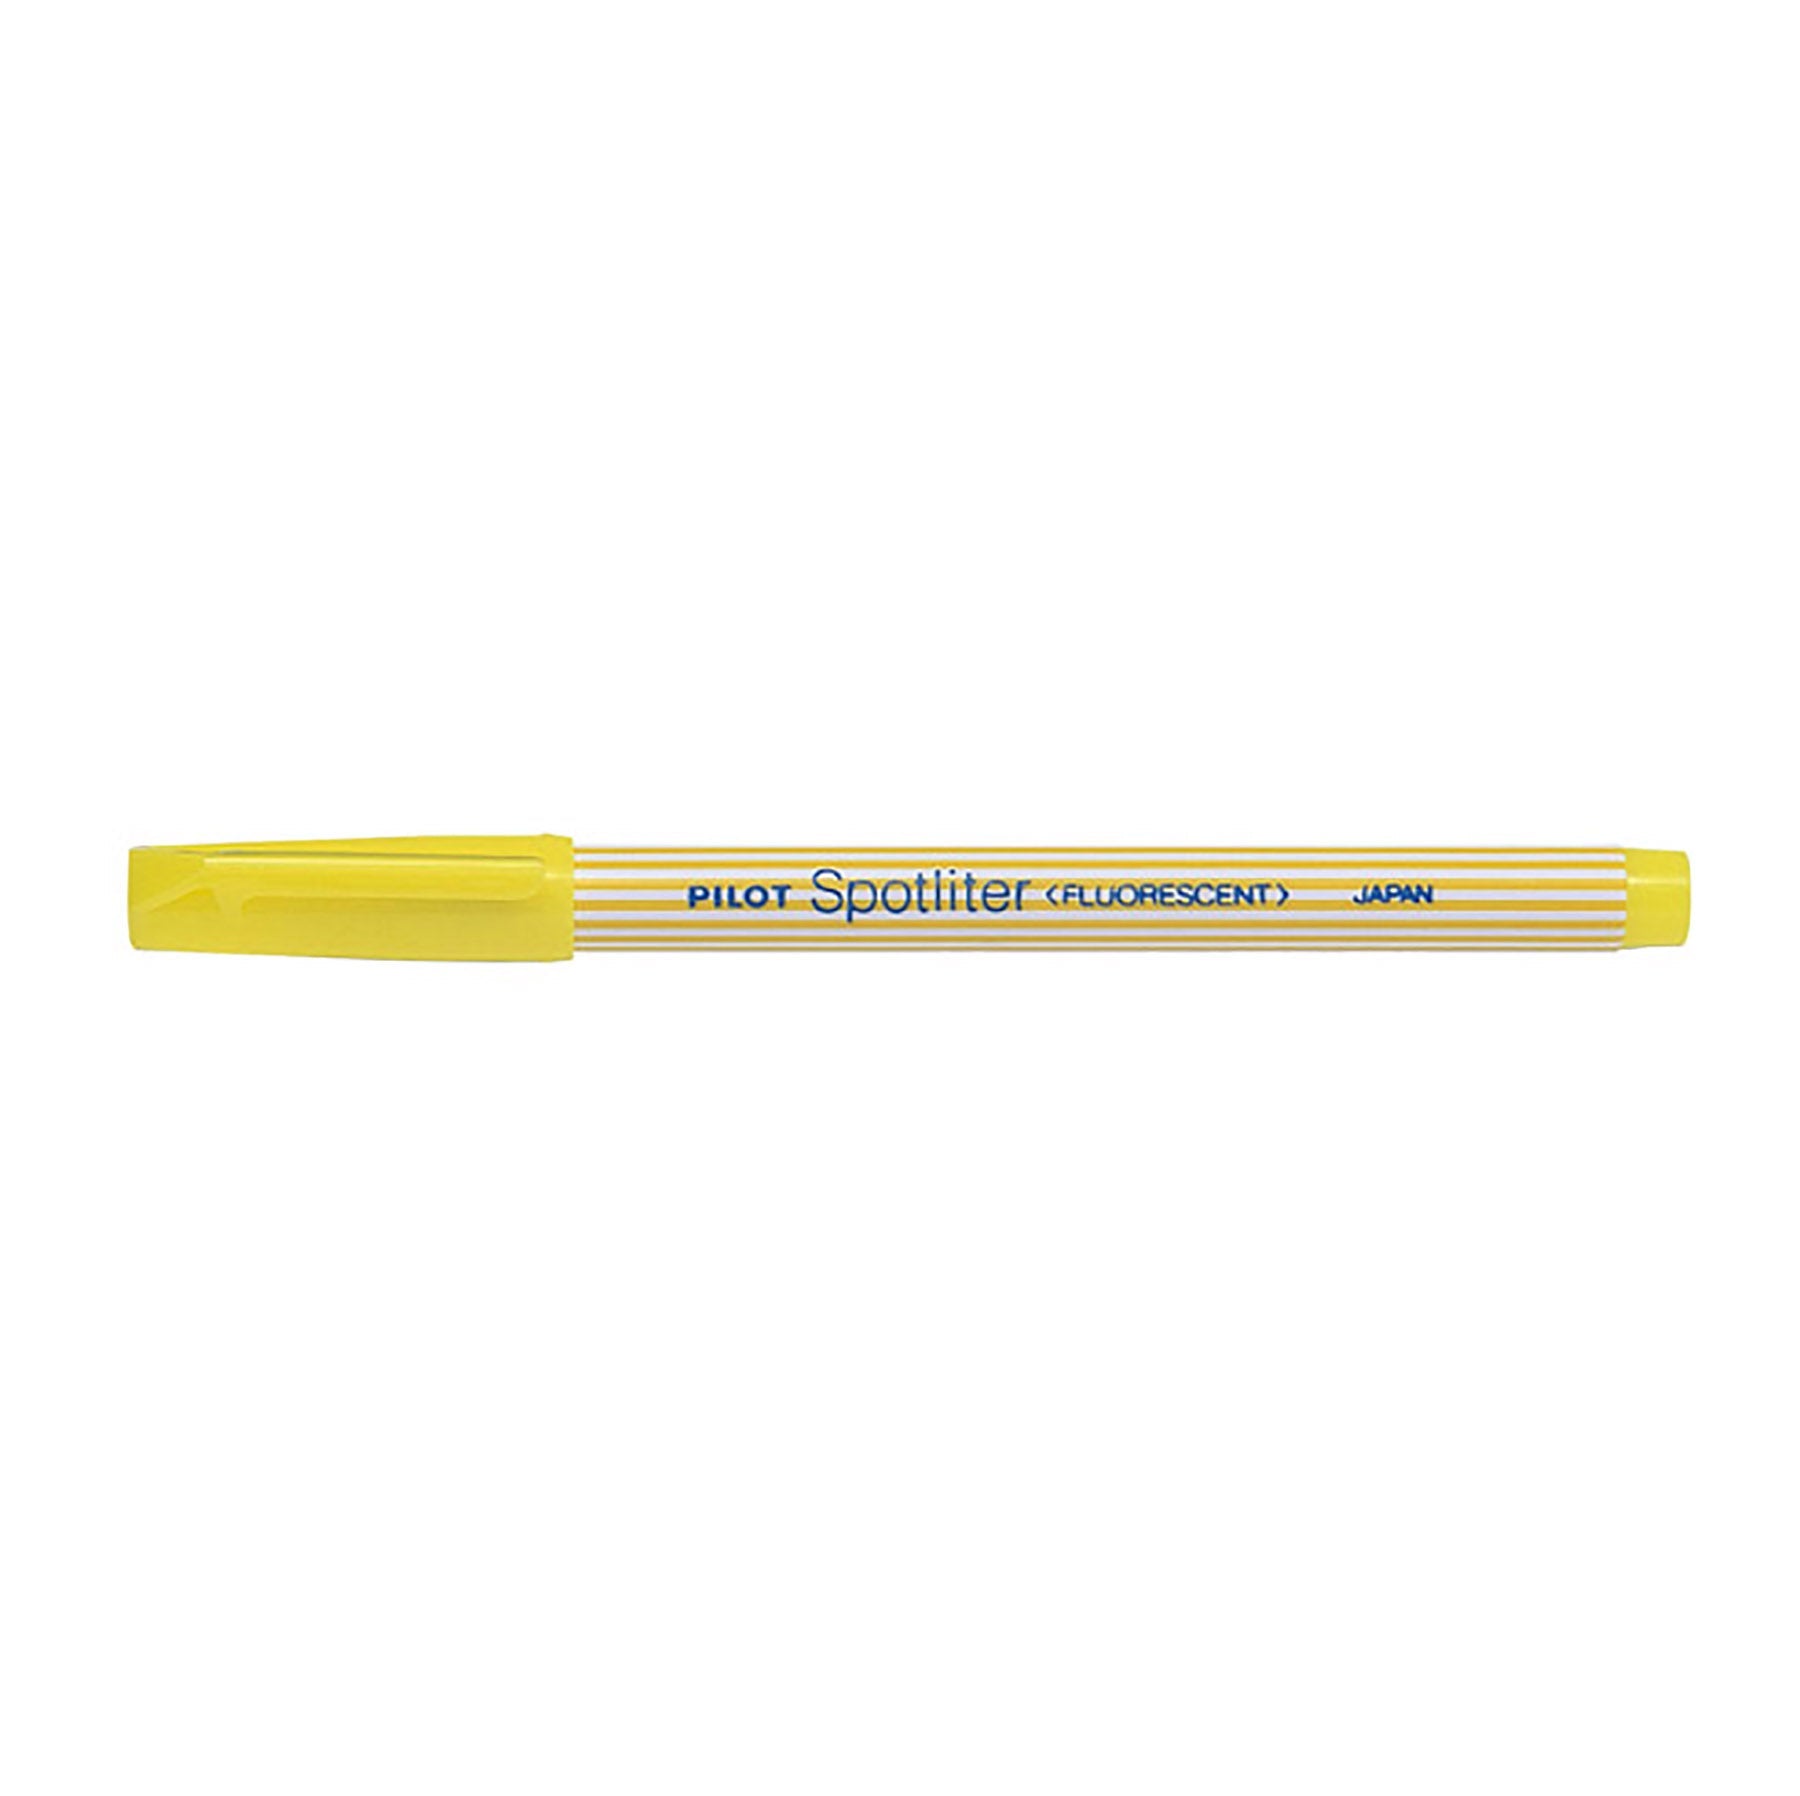 Pilot Spotliter Highlighter Chisel Tip - Neon Yellow